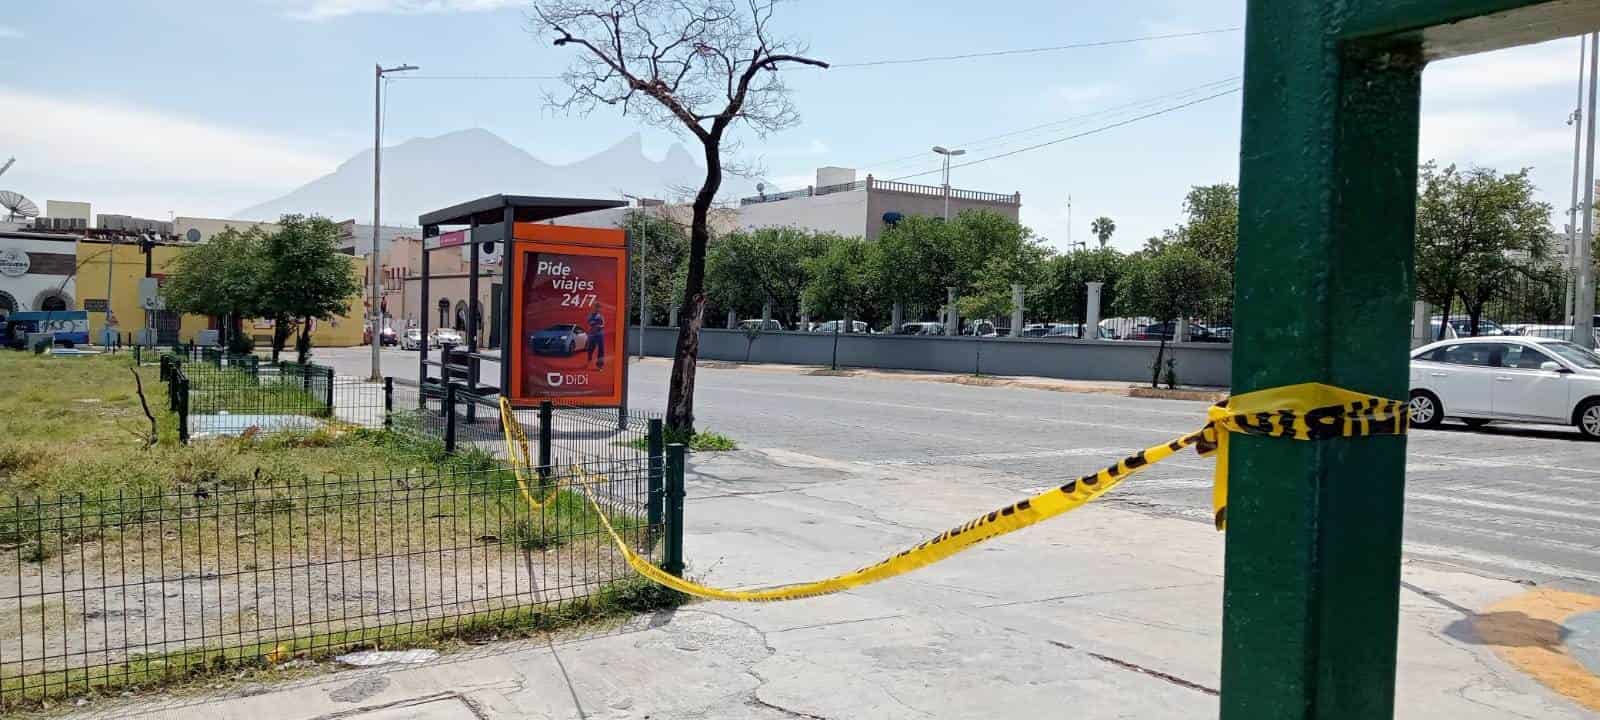 Tras ser perseguido varias cuadras por hombres armados en un taxi, el conductor de una camioneta fue ejecutado y su acompañante resultó lesionada, la madrugada de ayer en la Macroplaza, centro de Monterrey. 